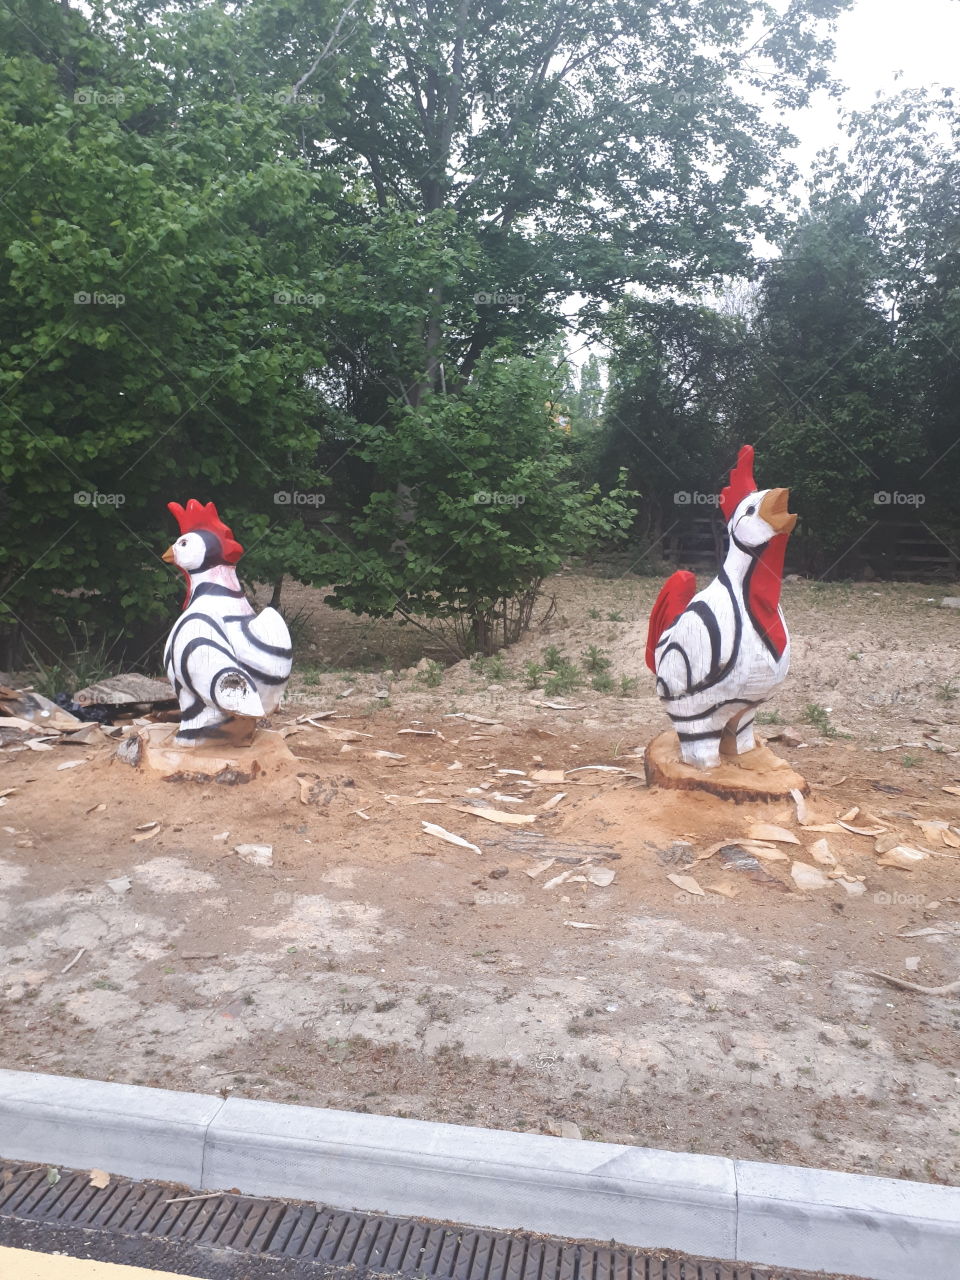 Wooden Chickens